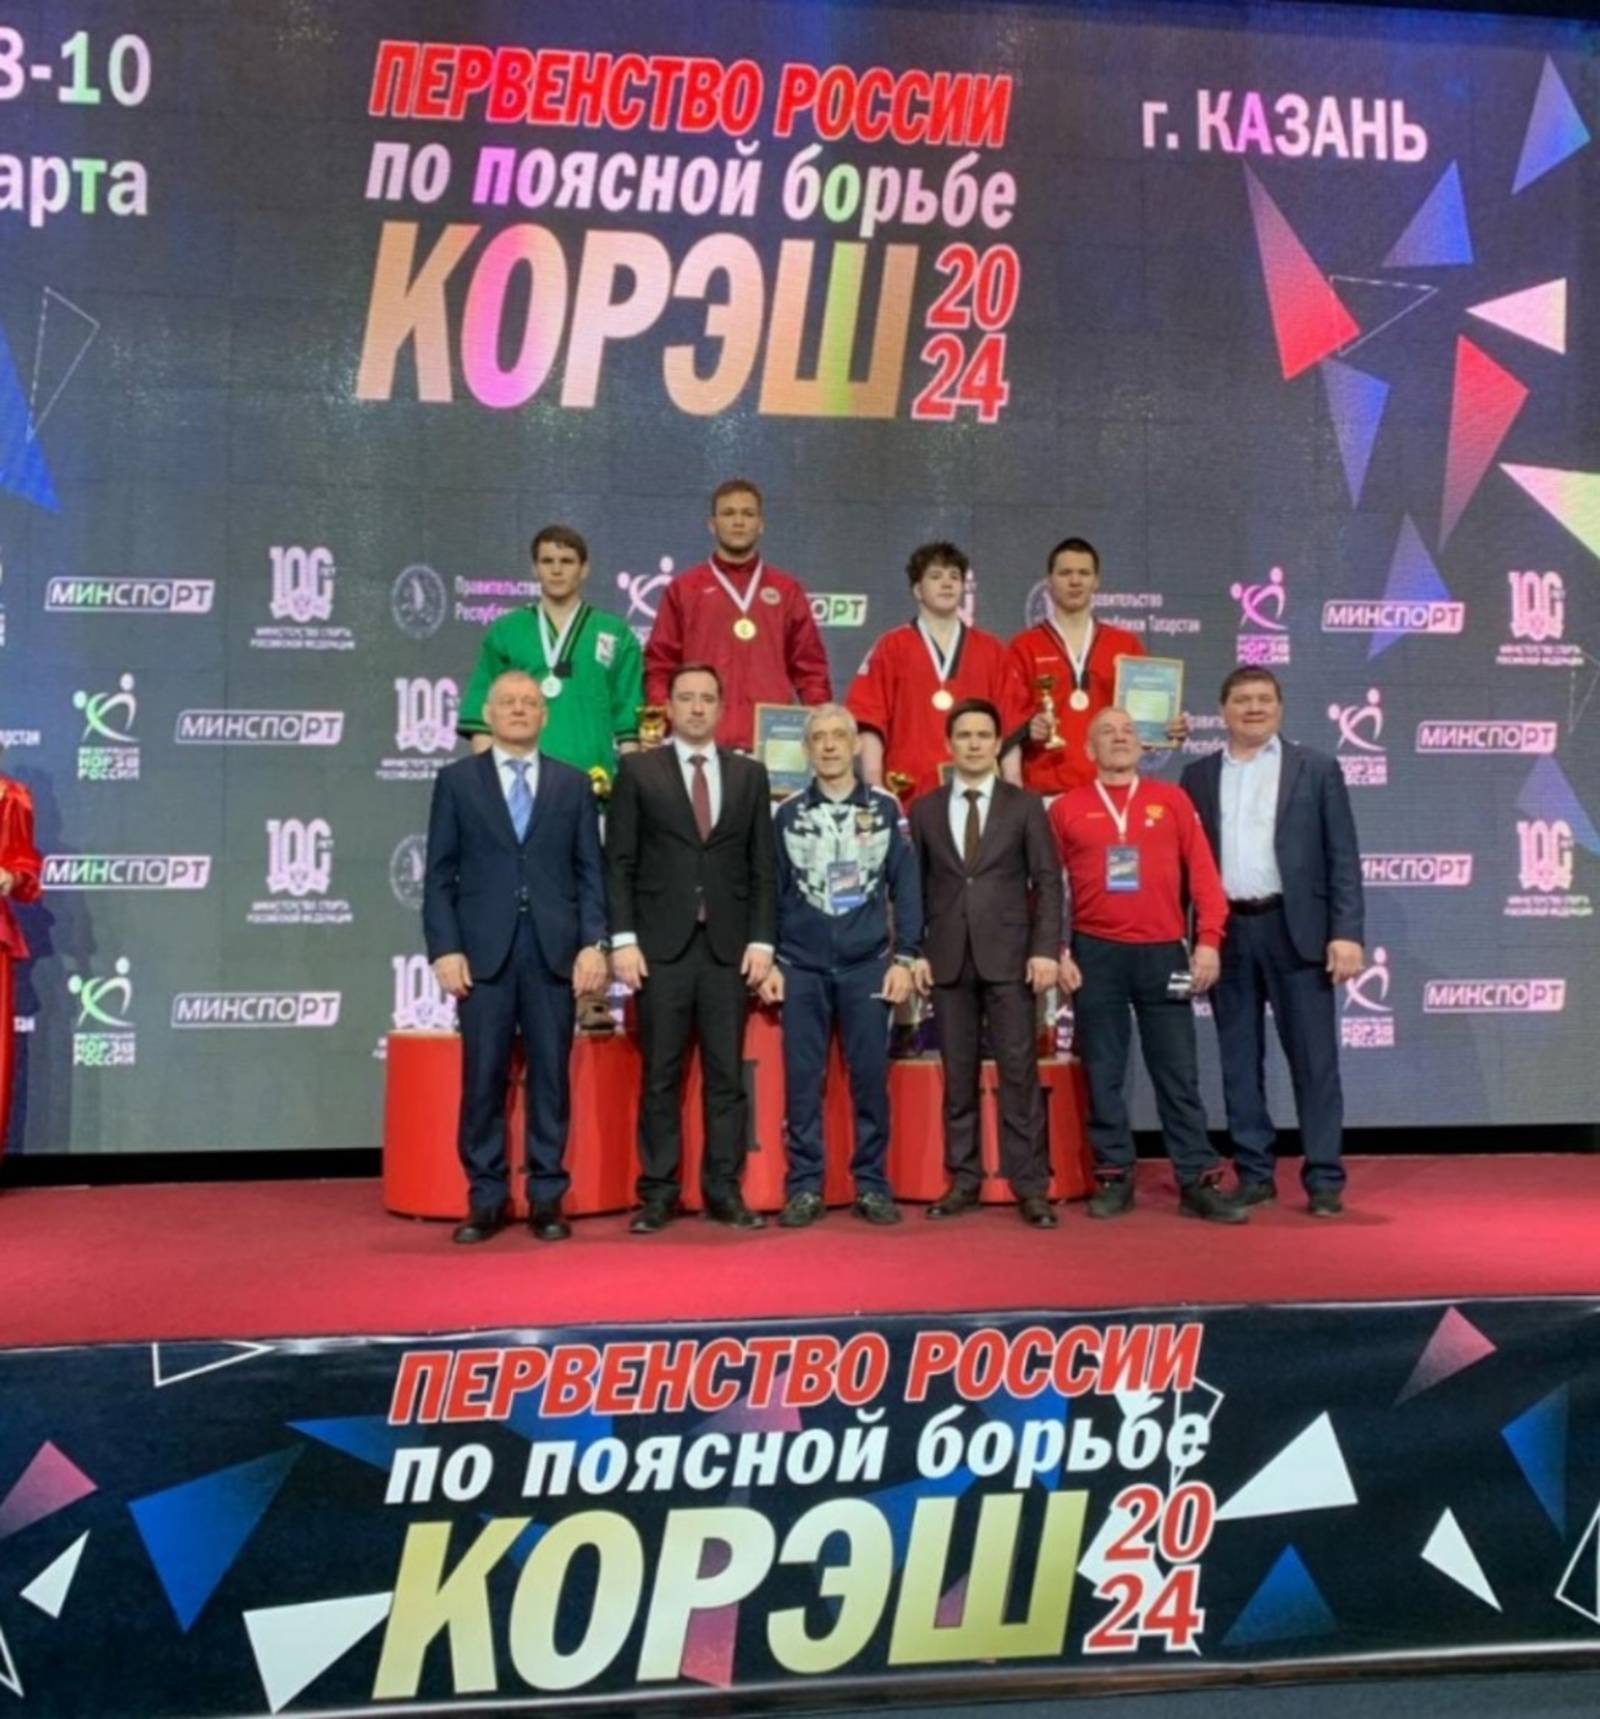 Чемпионат России по поясной борьбе куреш в Казани